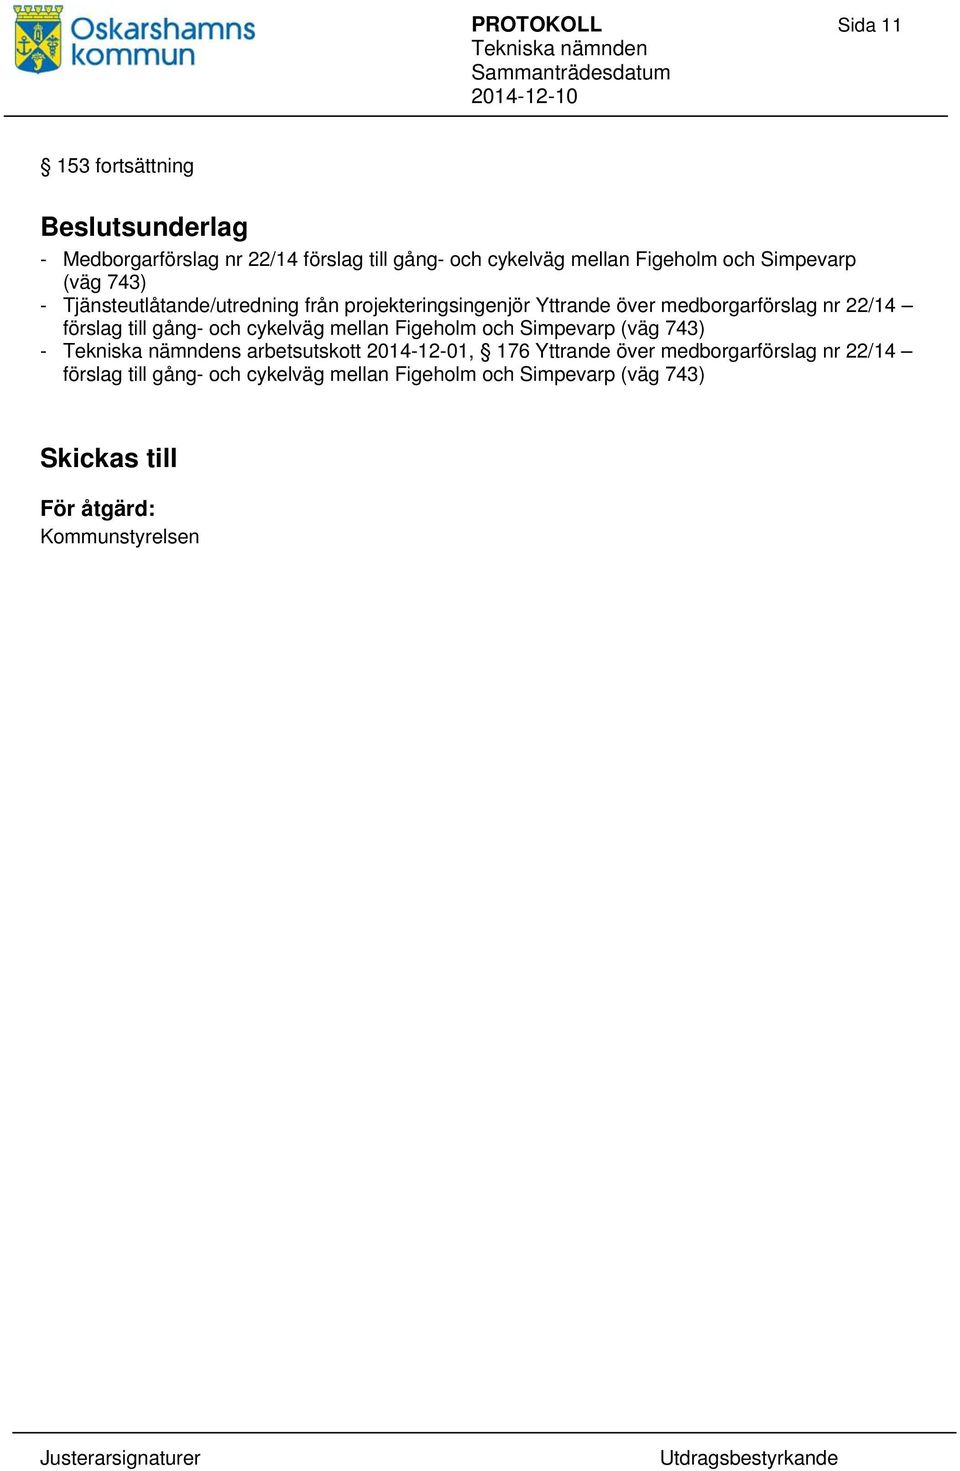 förslag till gång- och cykelväg mellan Figeholm och Simpevarp (väg 743) - s arbetsutskott 2014-12-01, 176 Yttrande över